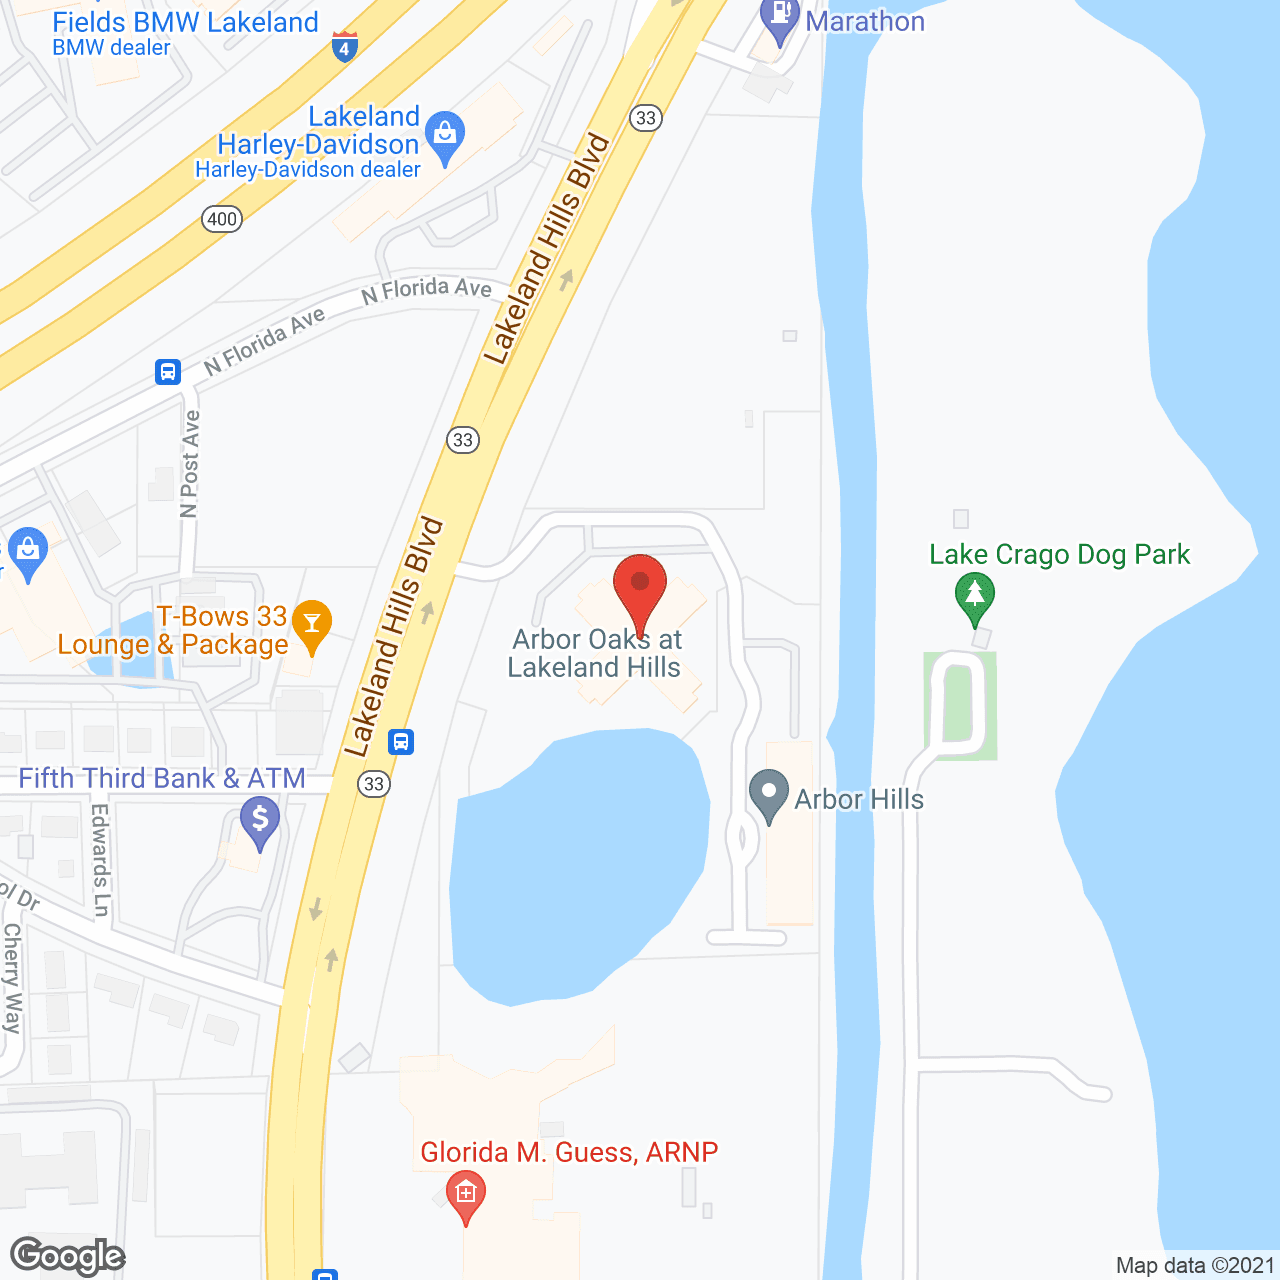 Arbor Hills in google map